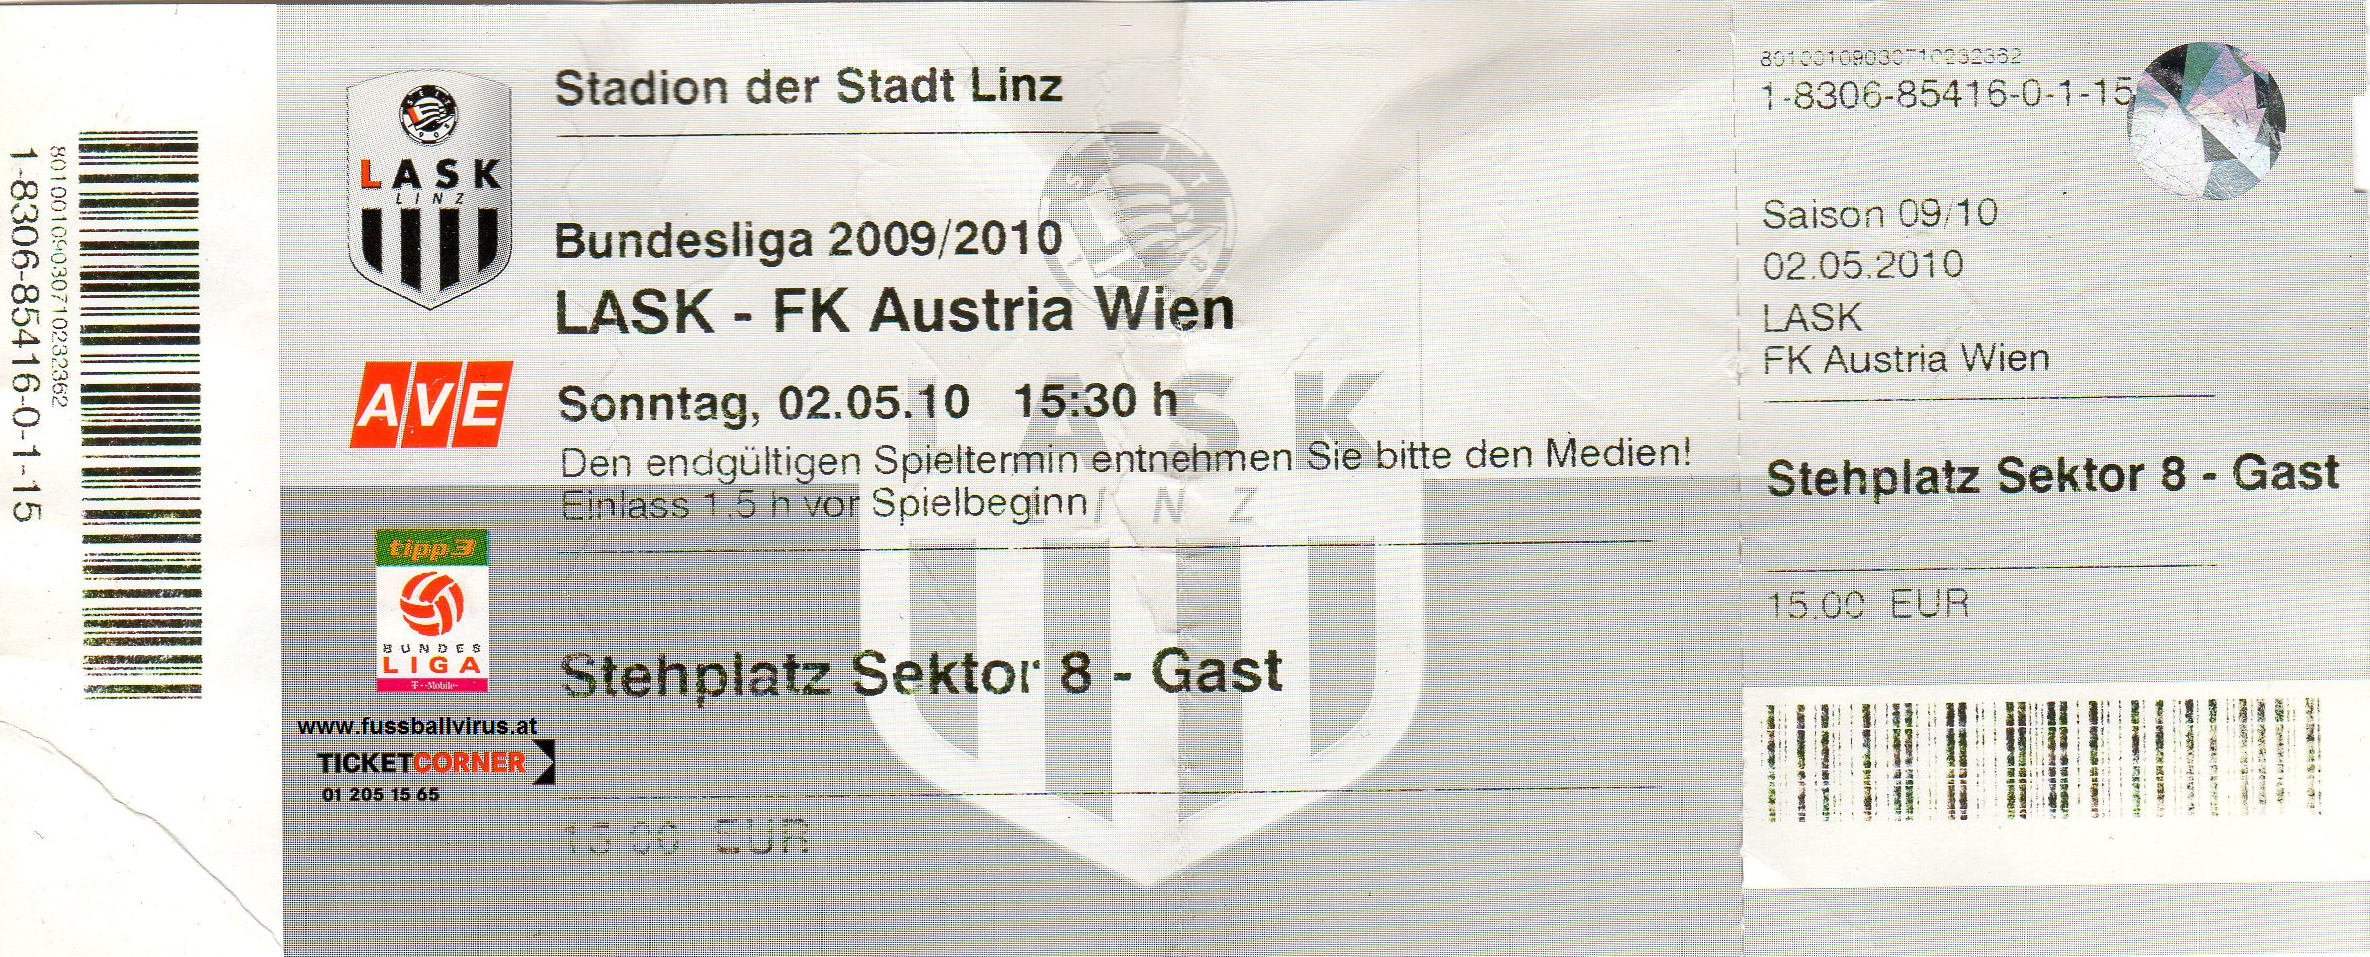 LASK - FK Austria Wien 2.5.